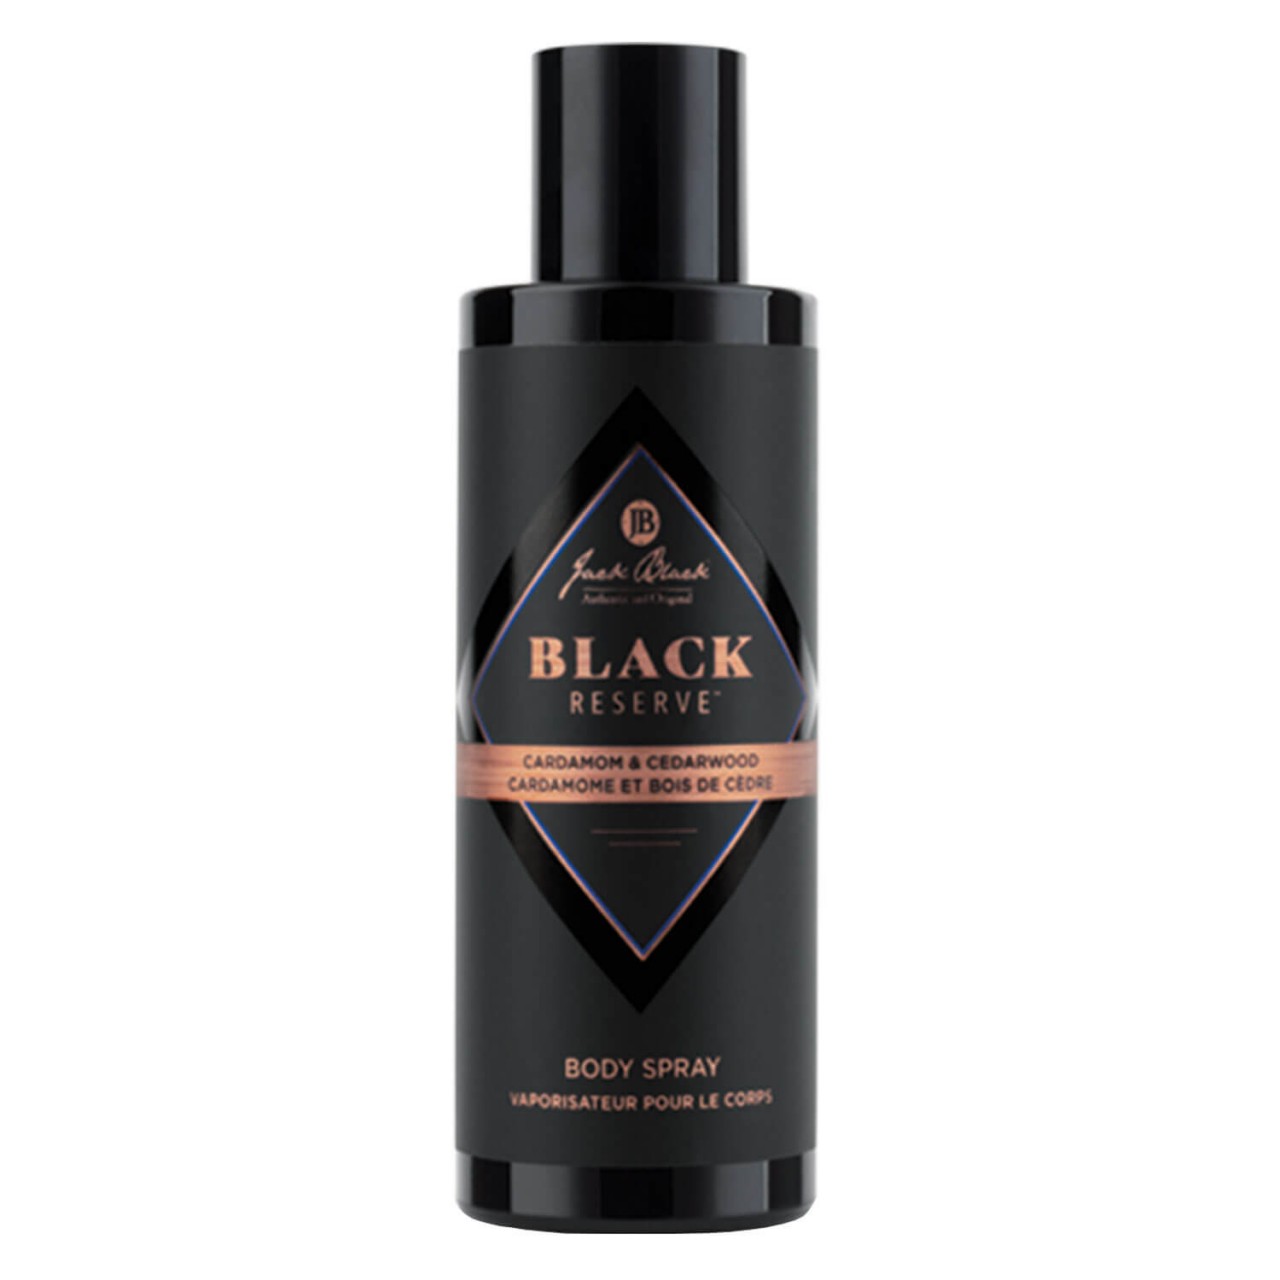 Black Reserve - Body Spray von Jack Black